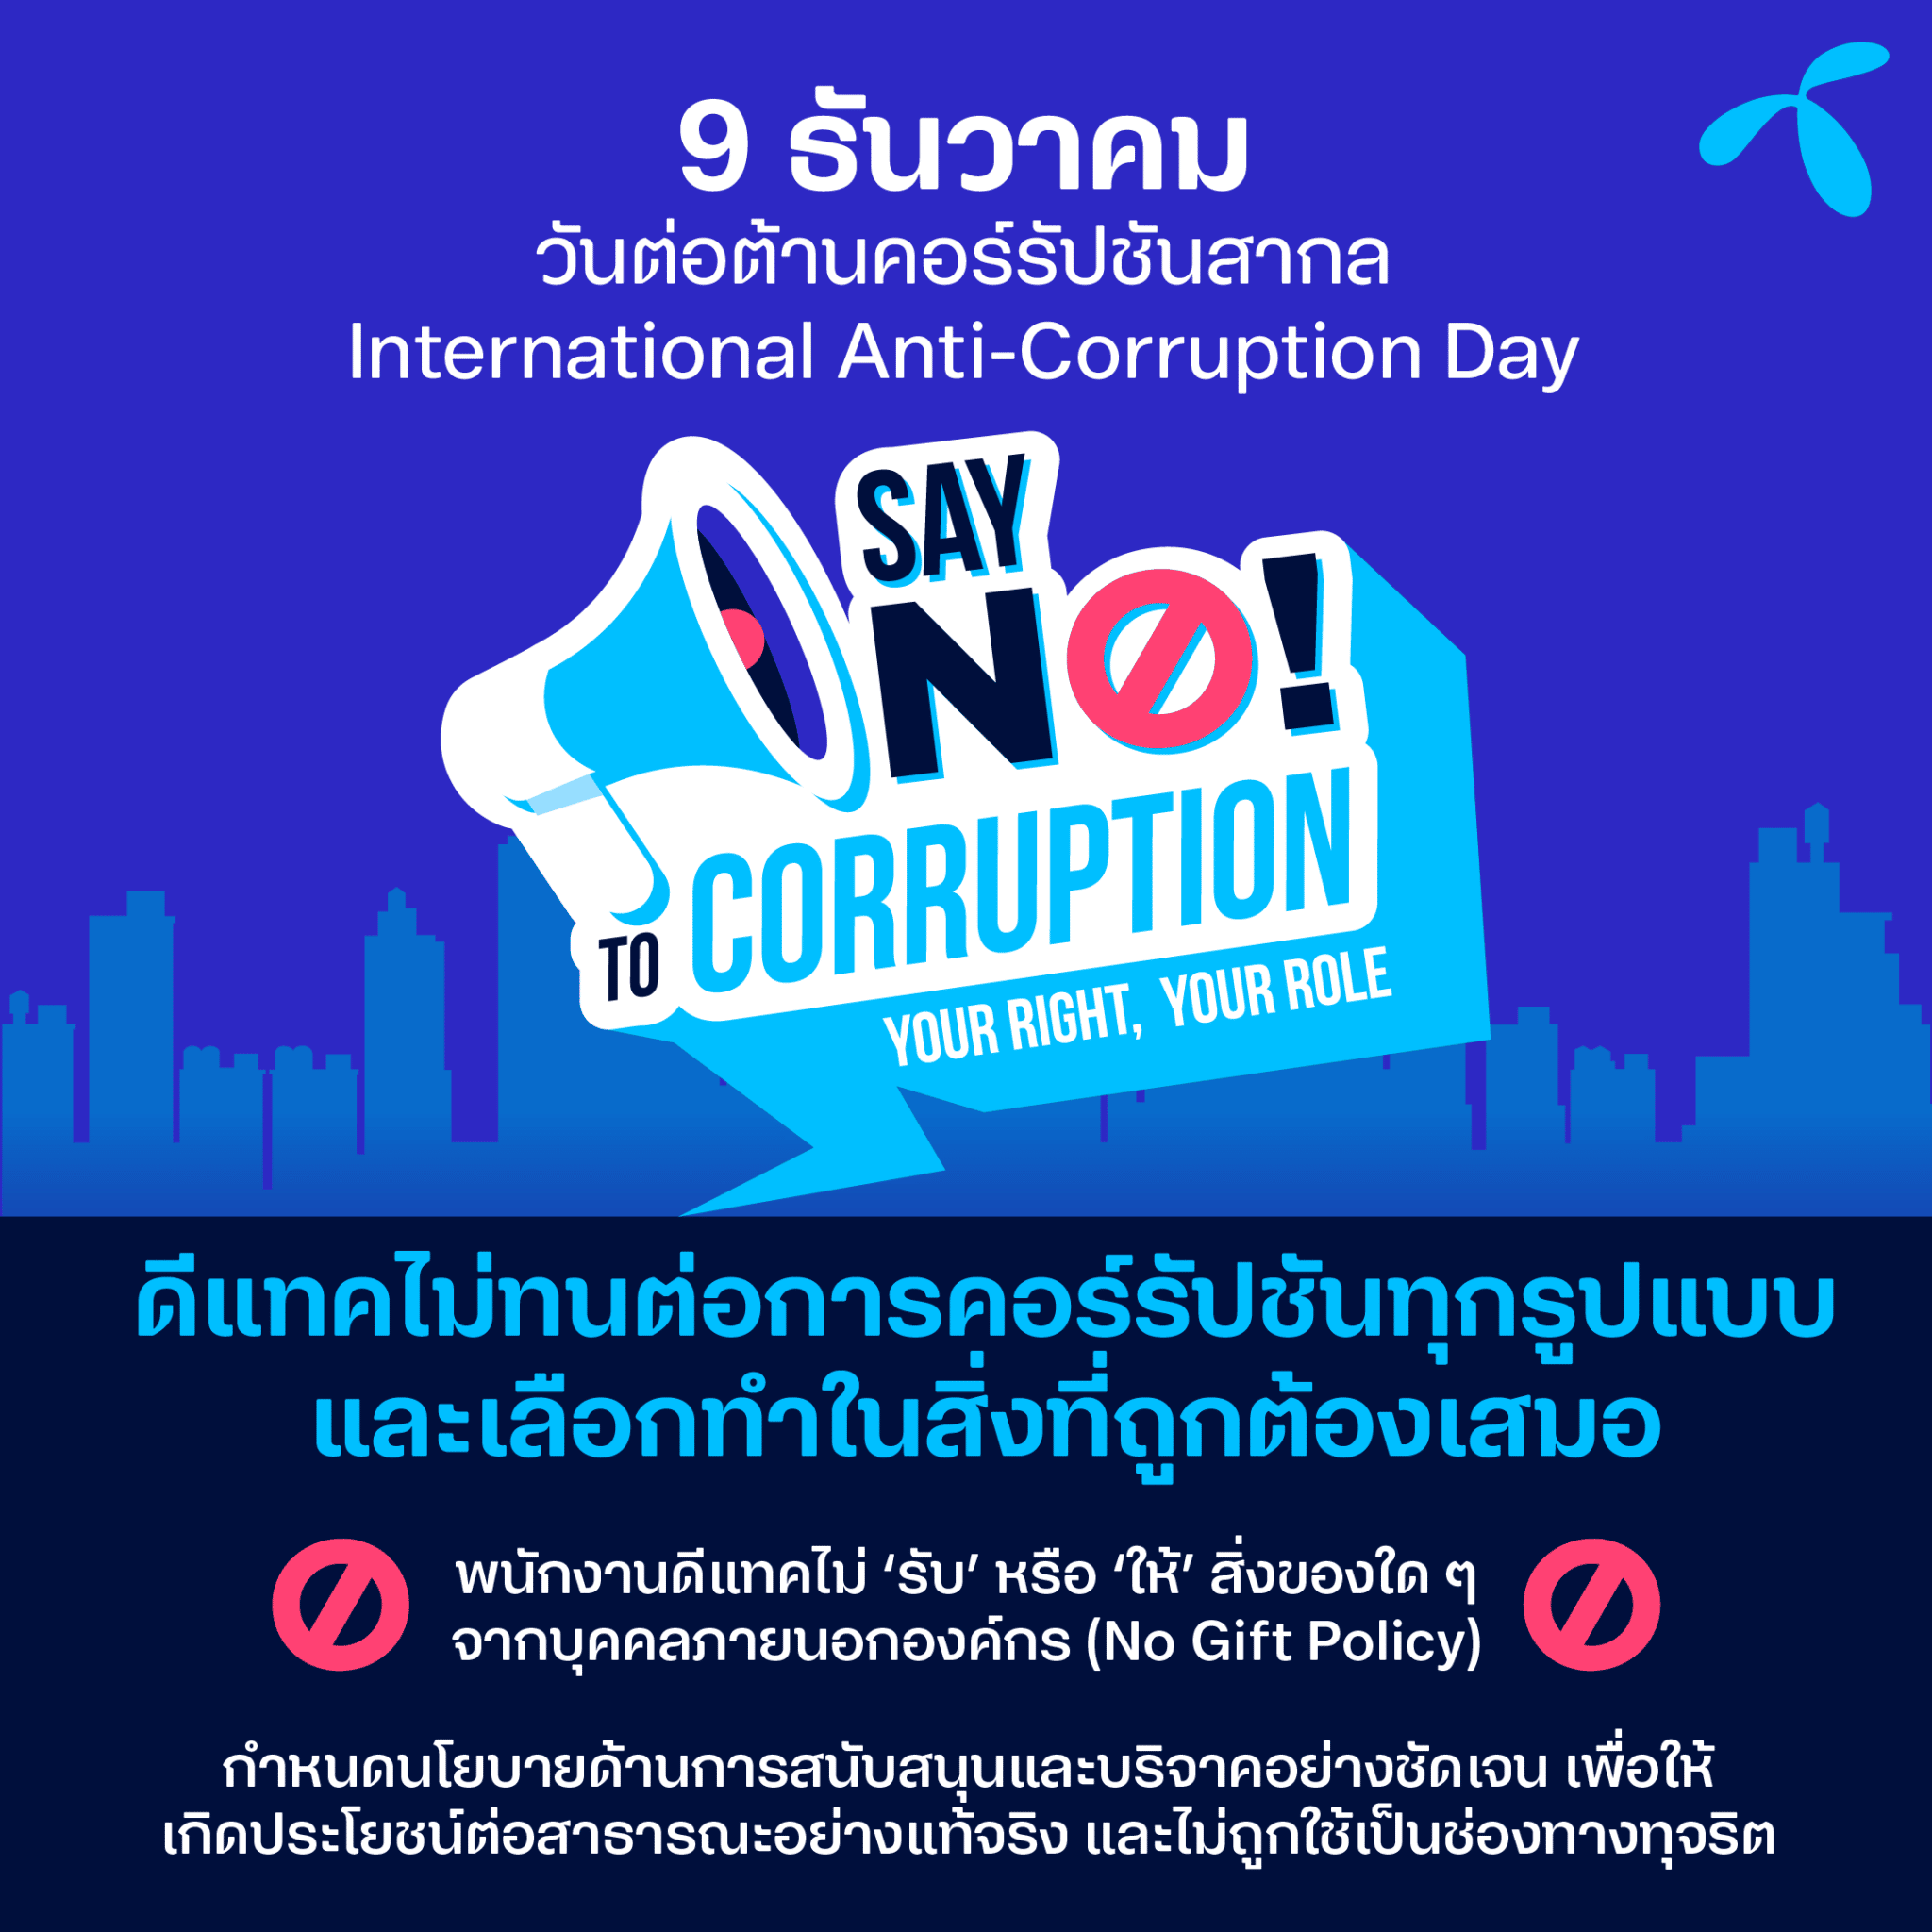 เพราะเราเลือกทำในสิ่งที่ถูกต้องเสมอ - Anti Corruption Day - ภาพที่ 1